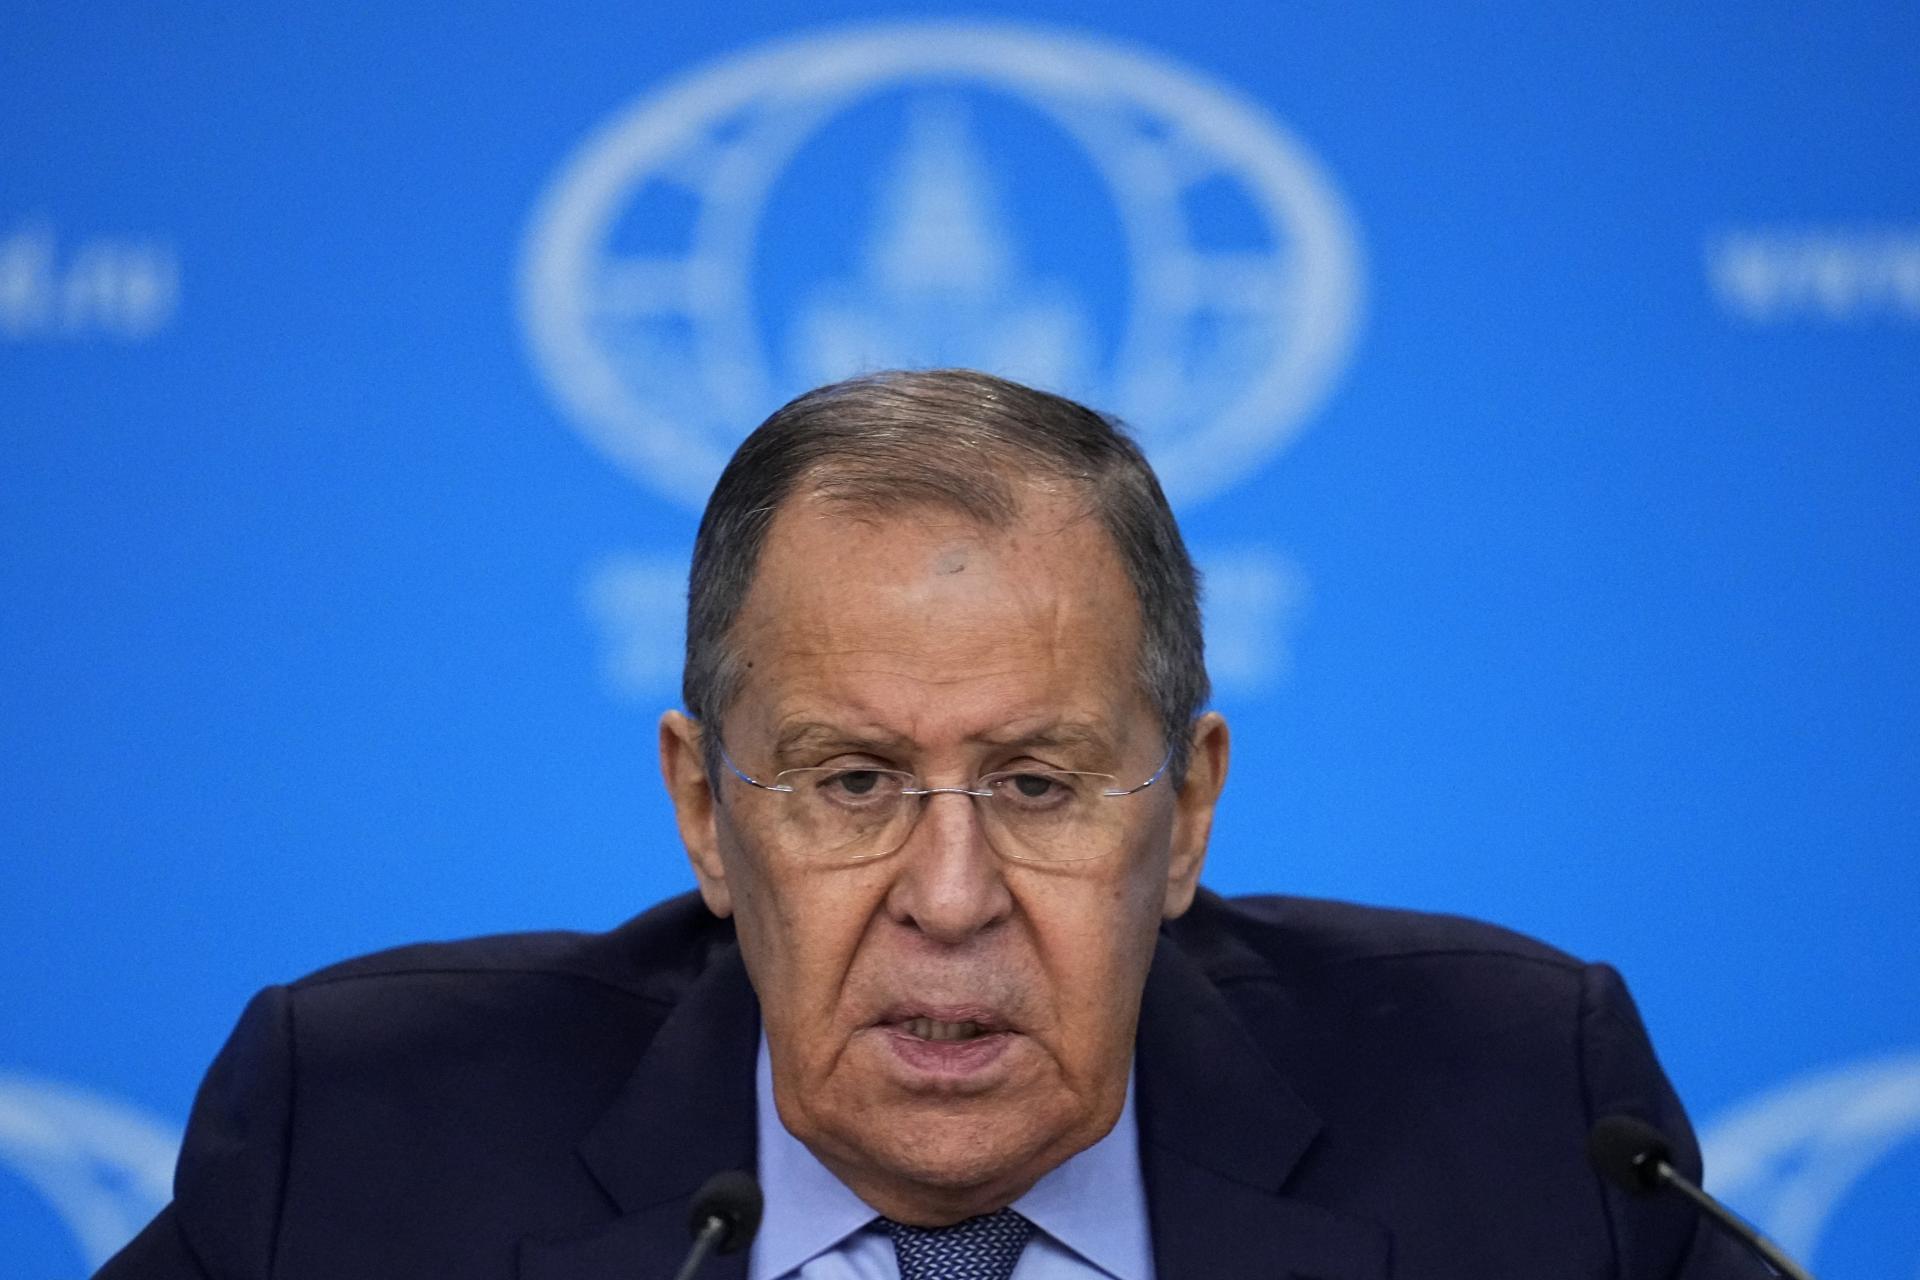 Rusko je otvorené rokovaniam o mieri, ale Zelenského pri moci nenechá, vyhlásil Lavrov